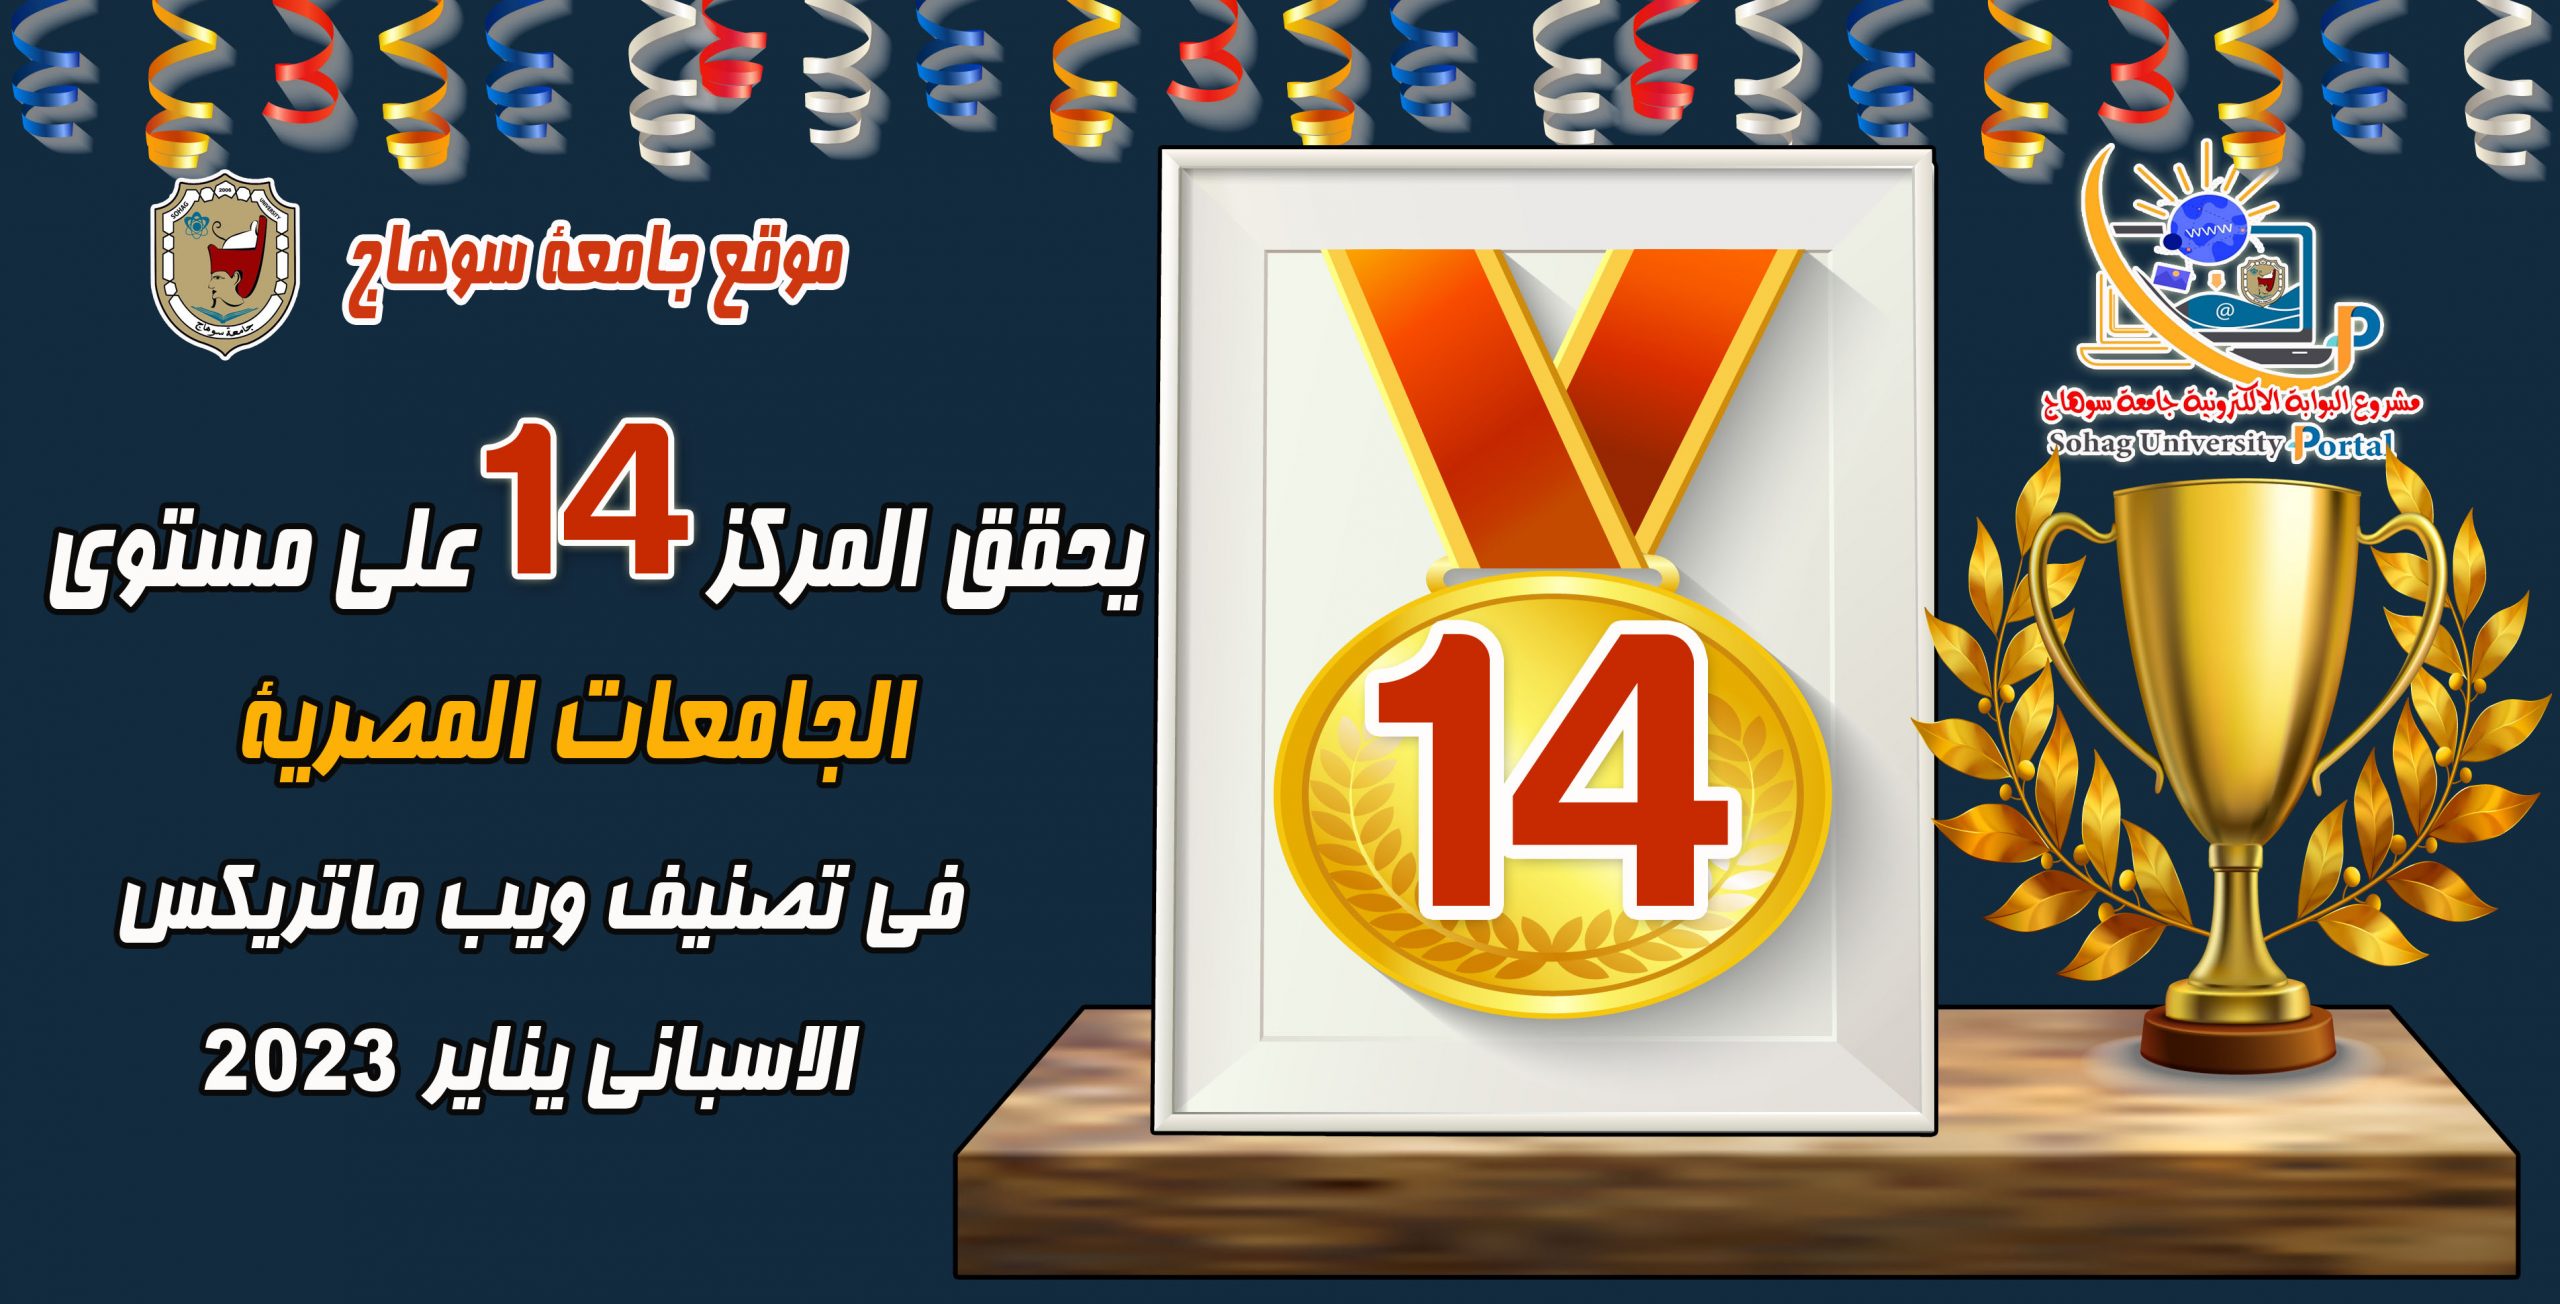 موقع جامعة سوهاج يحقق المركز 14 علي مستوي الجامعات المصرية في تصنيف ويب ماتريكس الاسباني يناير 2023